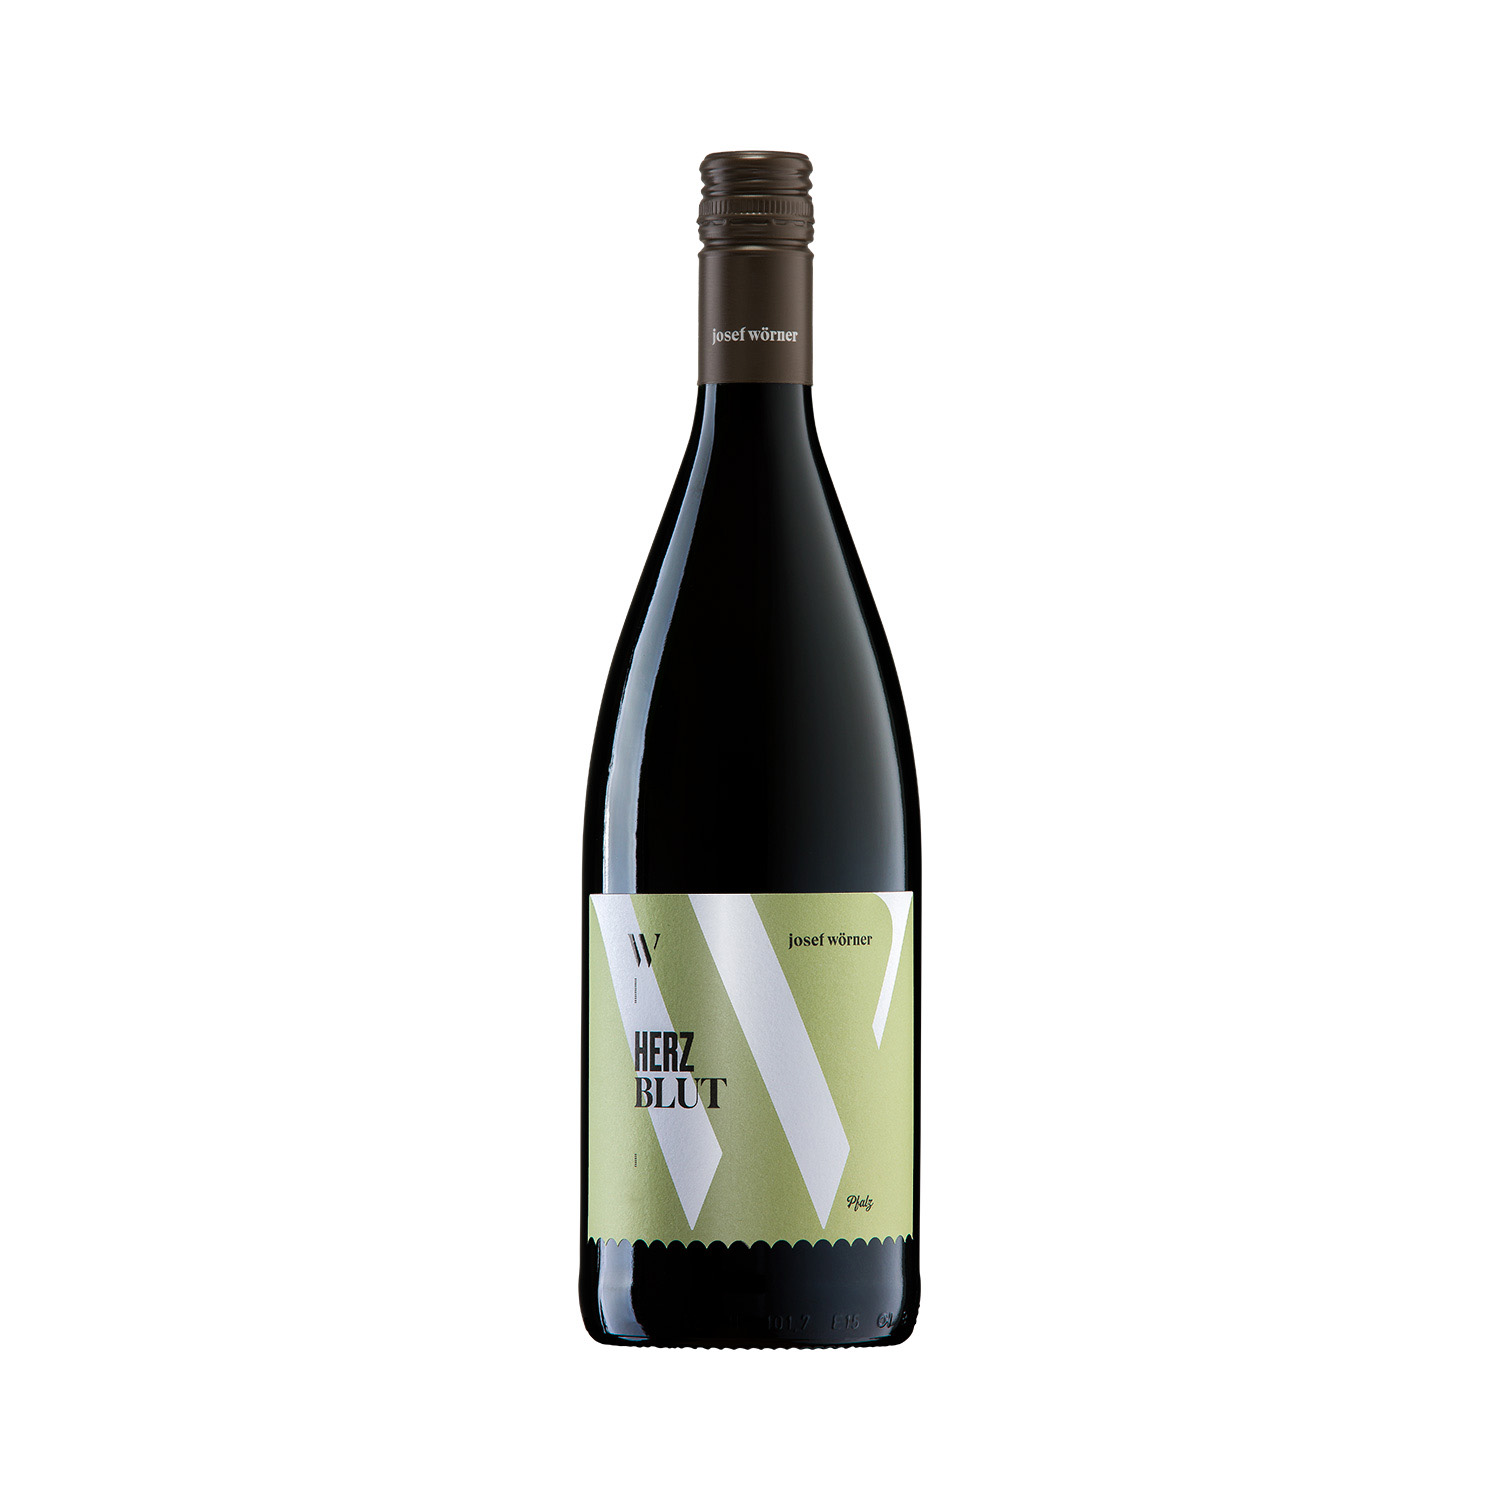 2022 Rotwein "Herzblut" lieblich 1,0 L - Weingut Josef Wörner